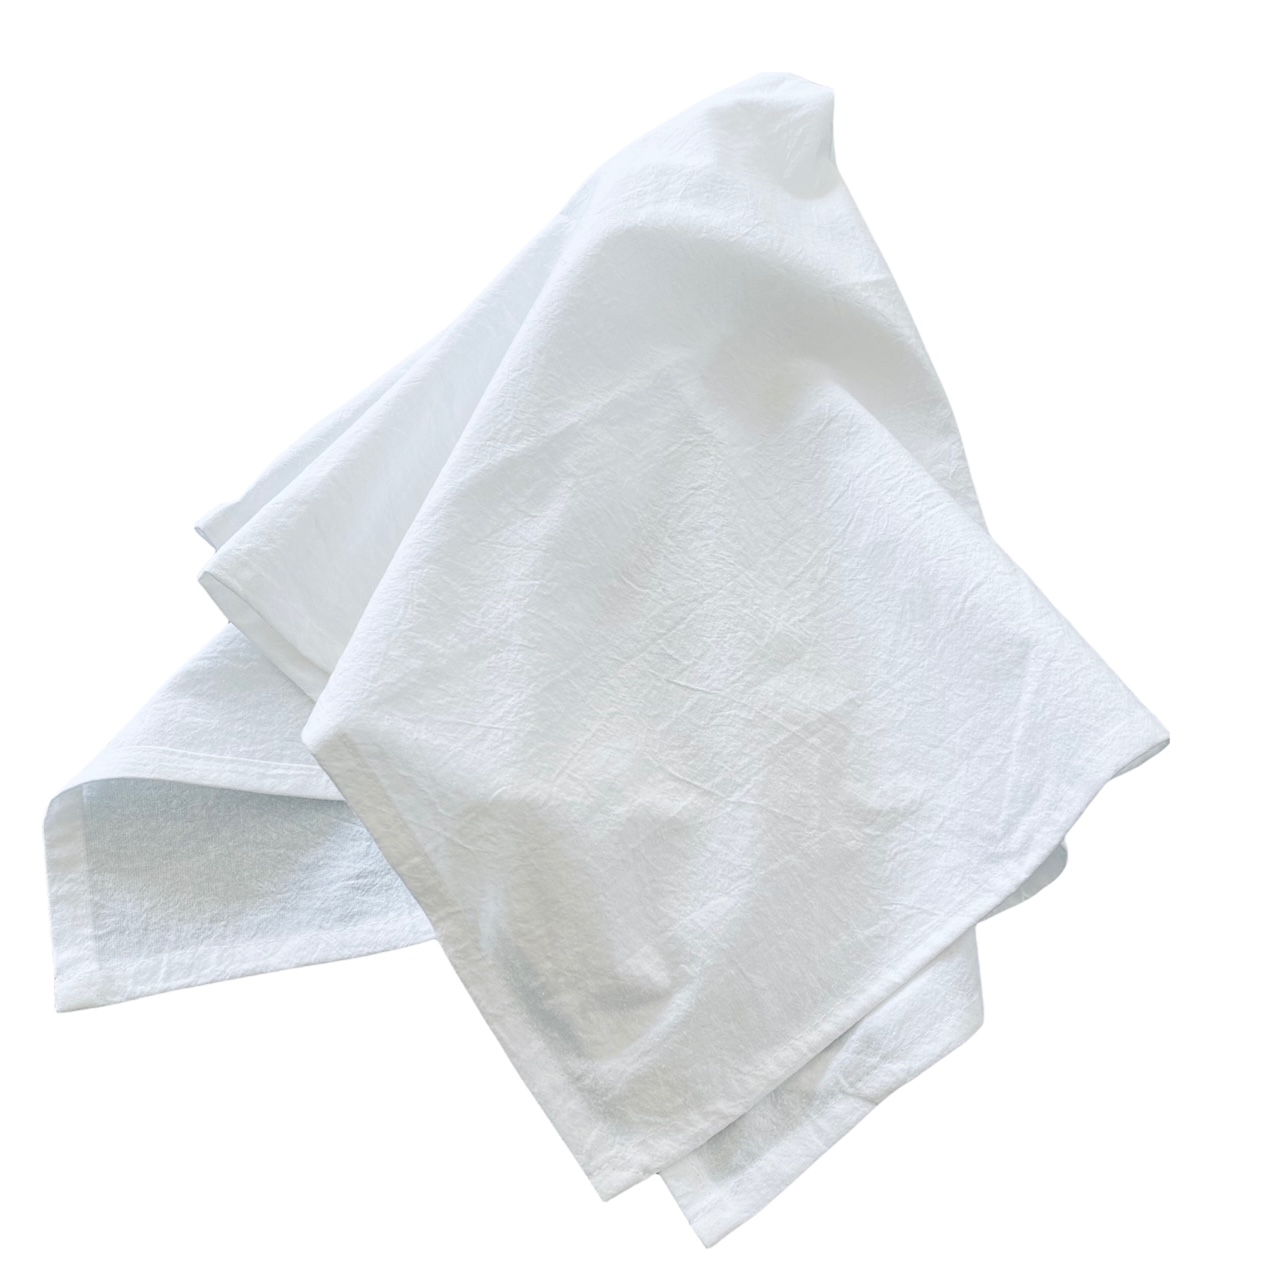 Personalizable Cotton White Flour Sack Towels